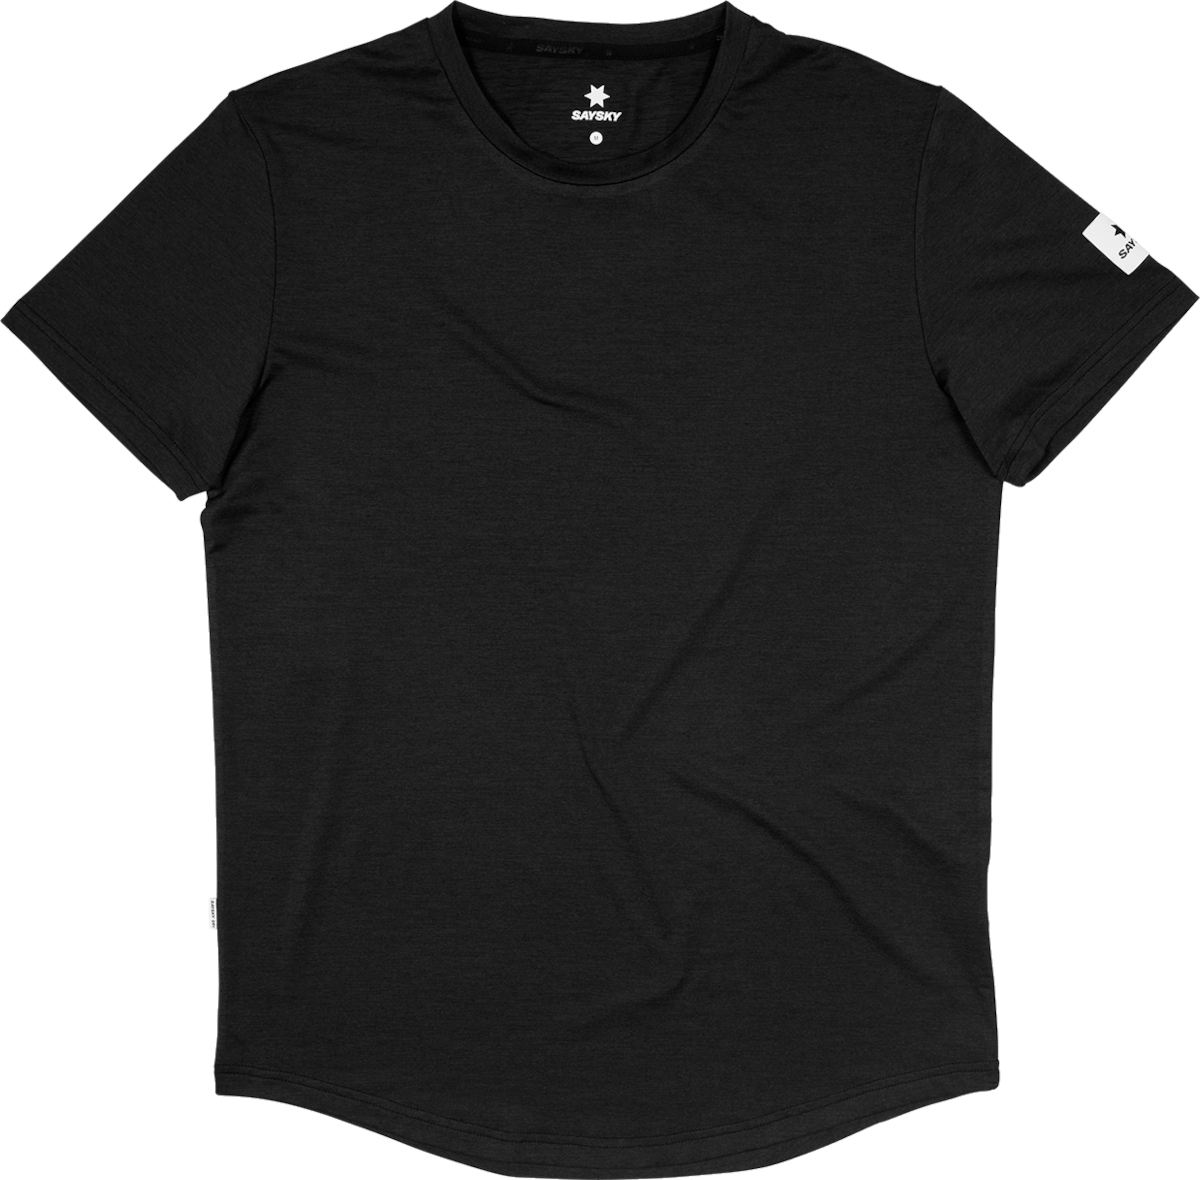 Saysky Clean Pace T-shirt Rövid ujjú póló